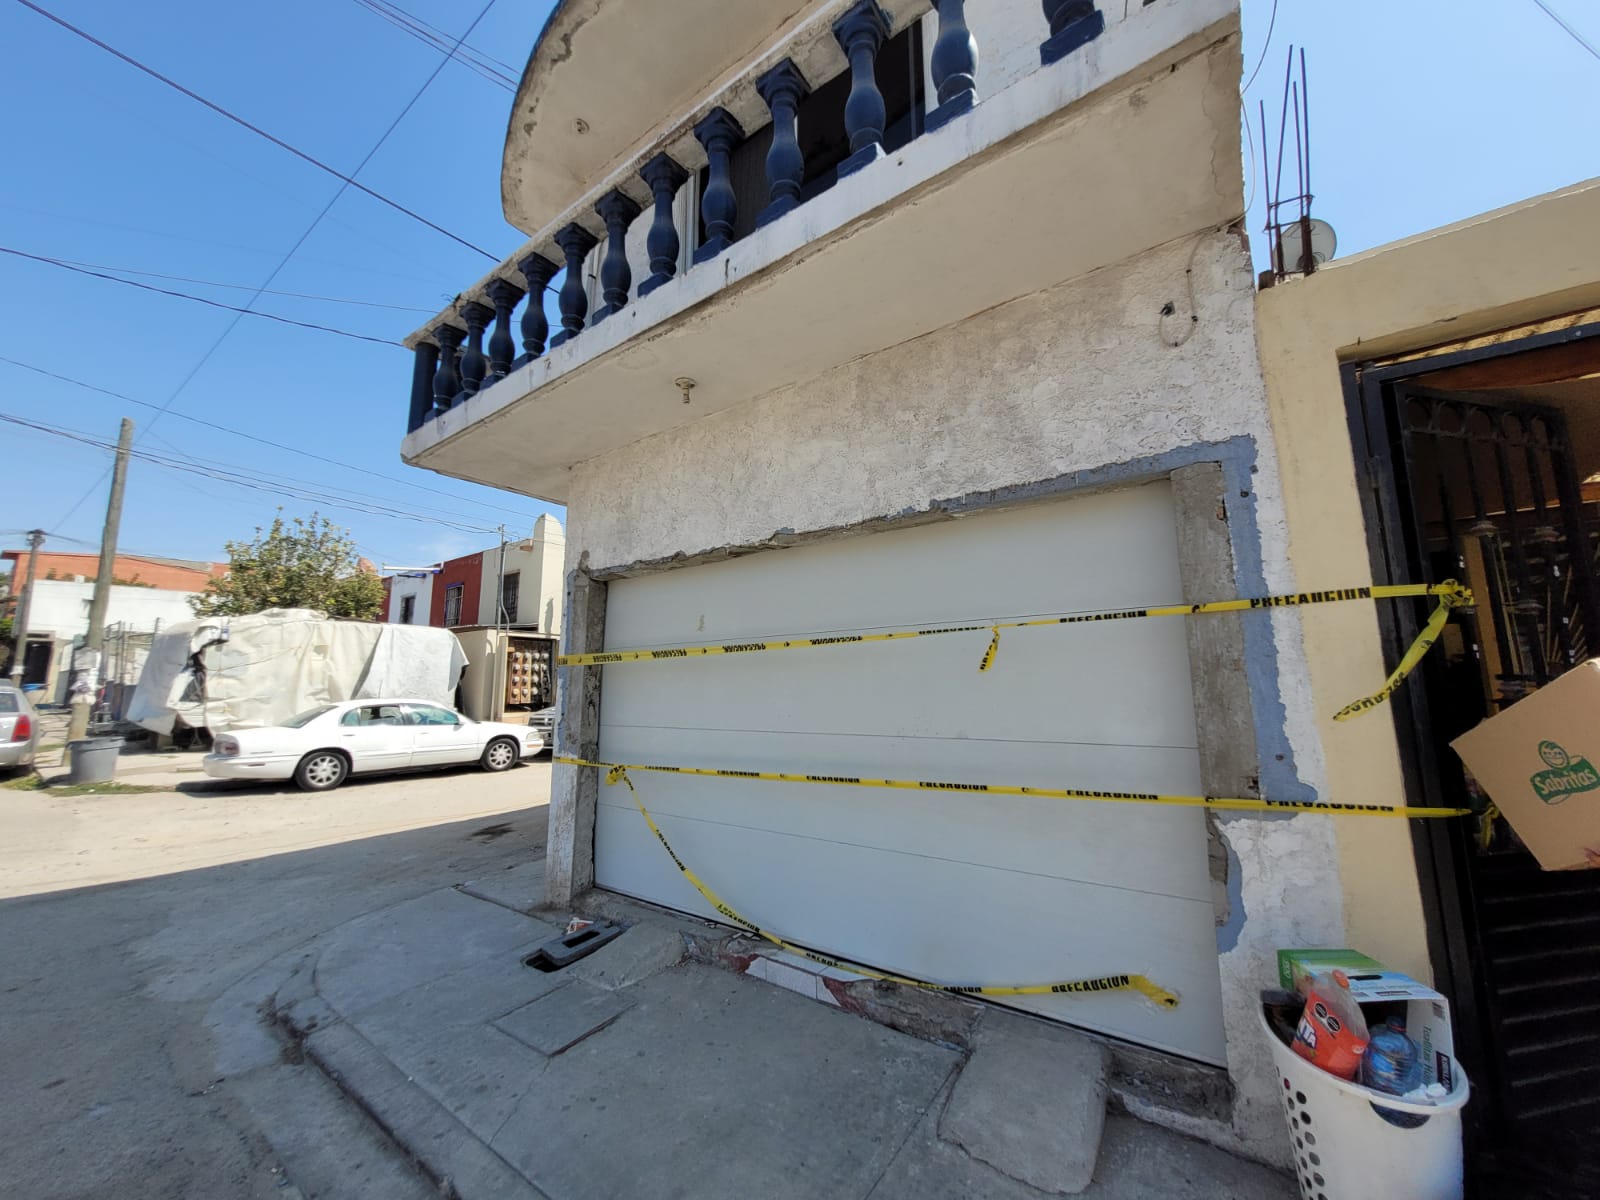 Liberan a empresario de Tijuana y capturan a 7 secuestradores – En Linea BC